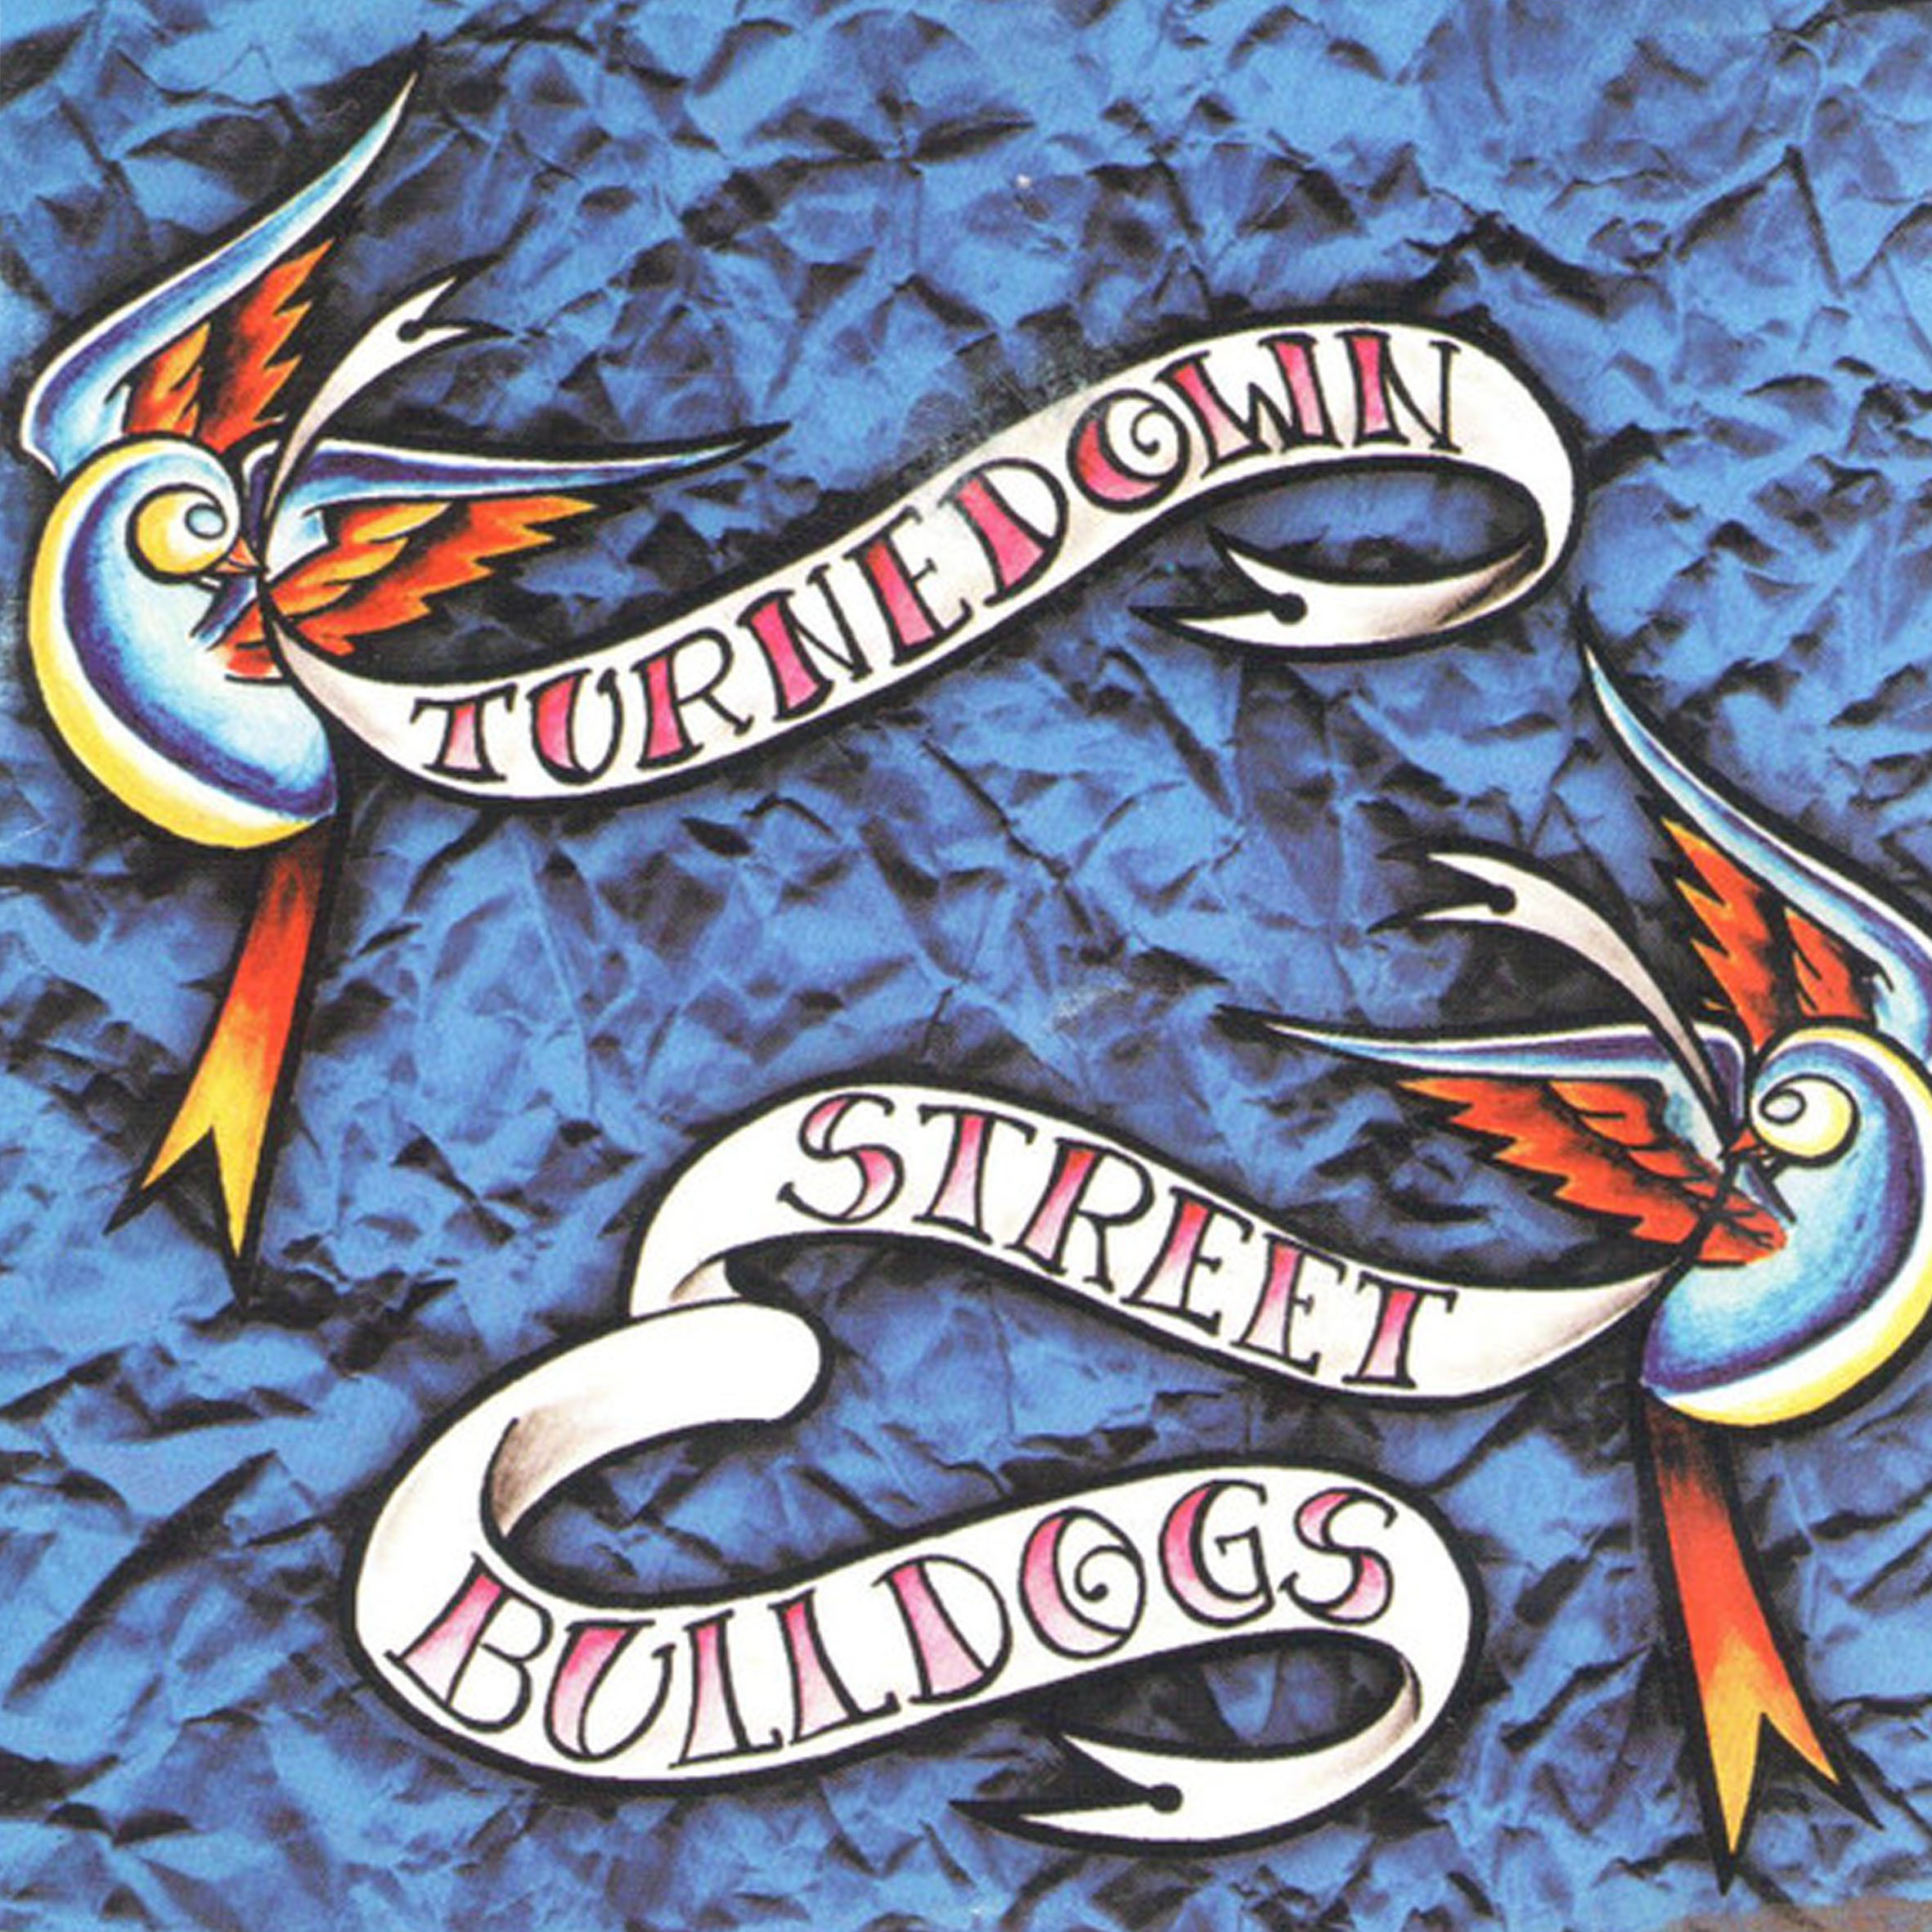 CD - Turnedown e Street Bulldogs - Split 1999